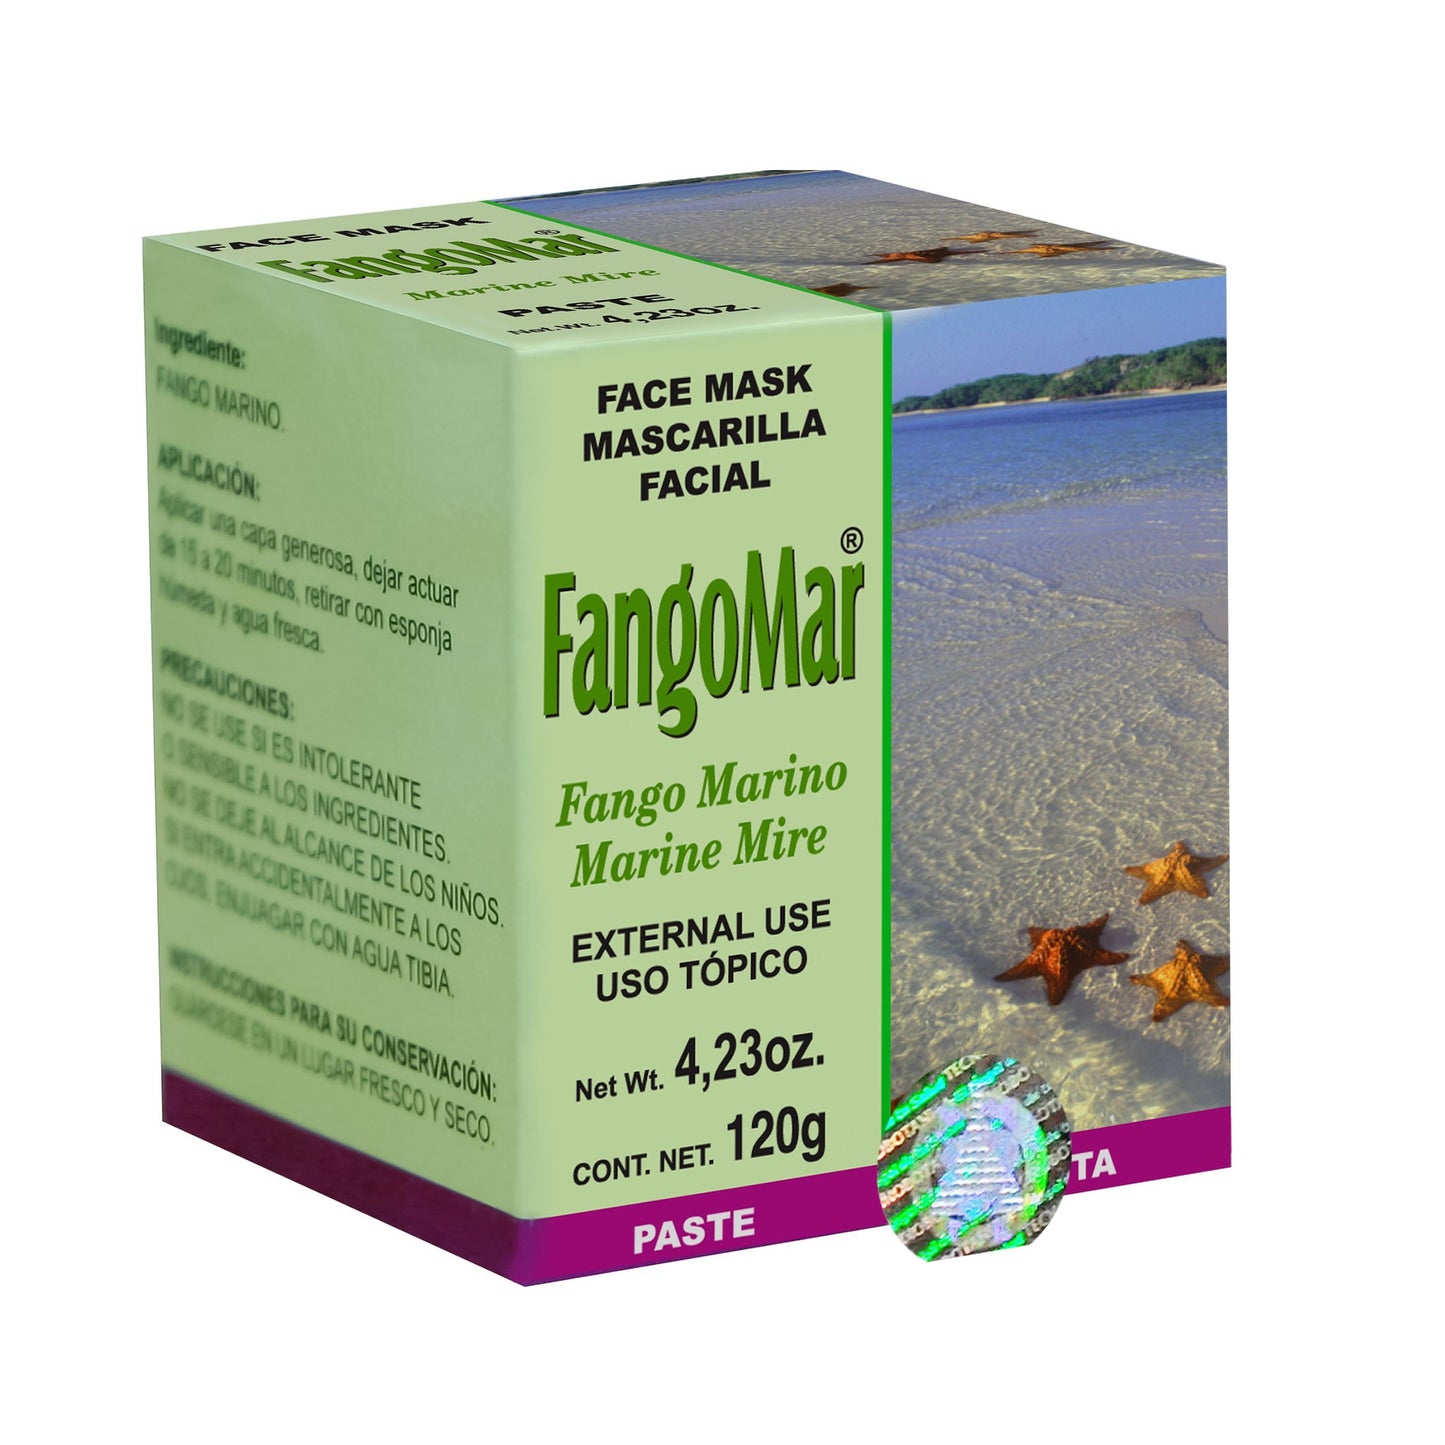 FANGOMAR ® mascarilla facial 120g